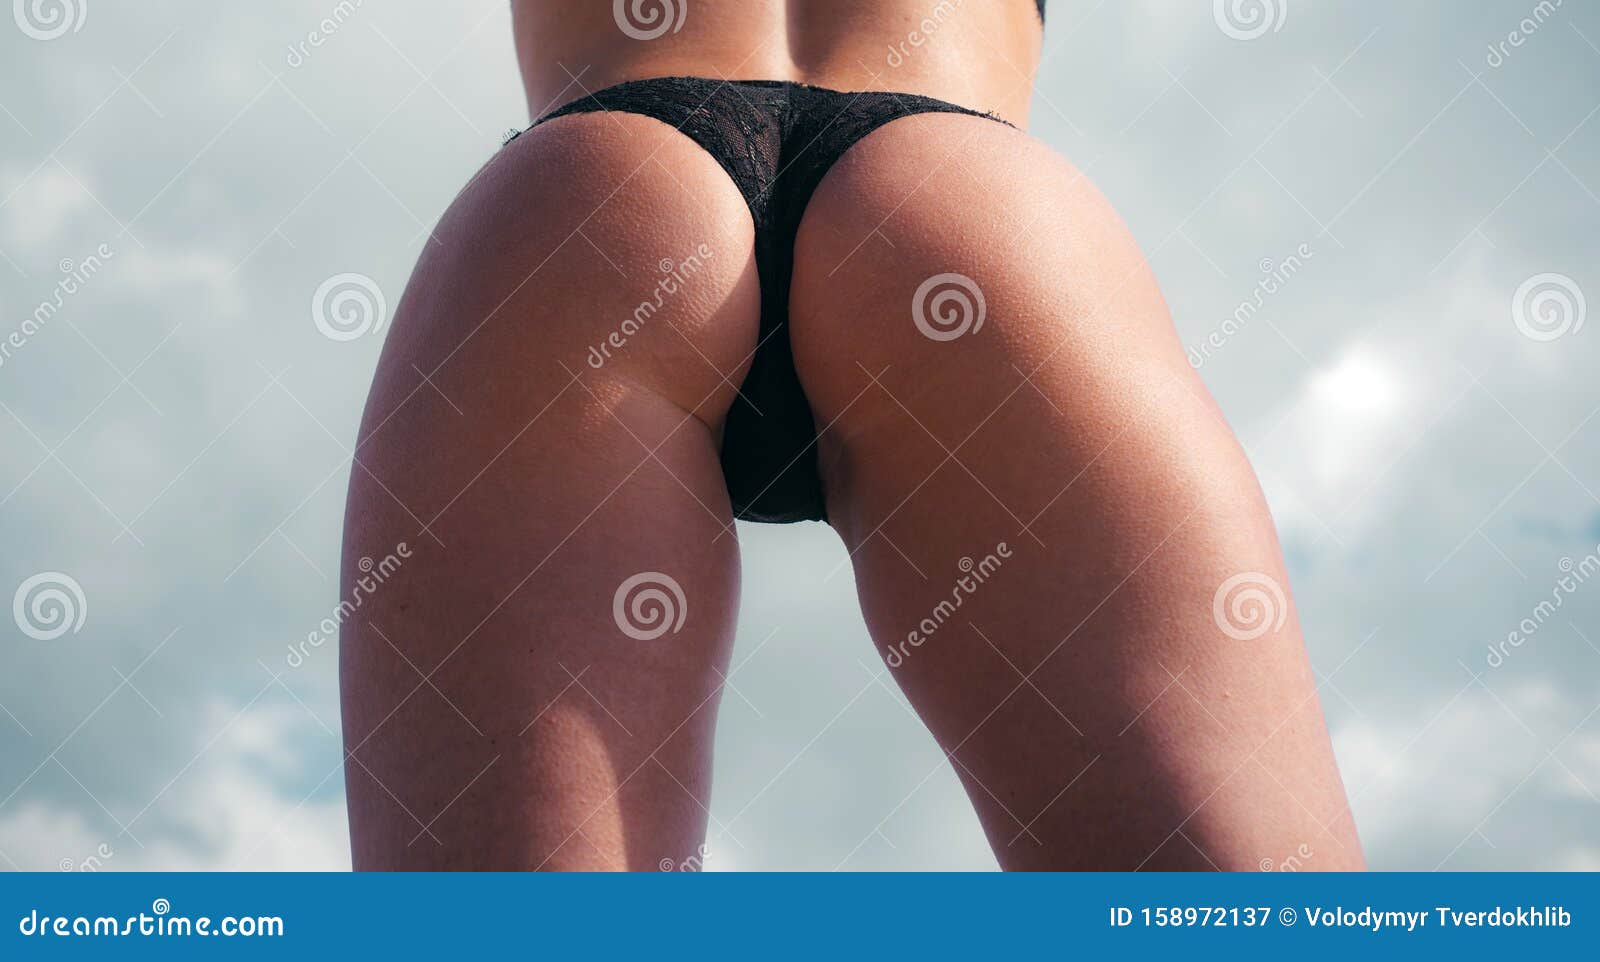 Girl school sex ass - Sex photo